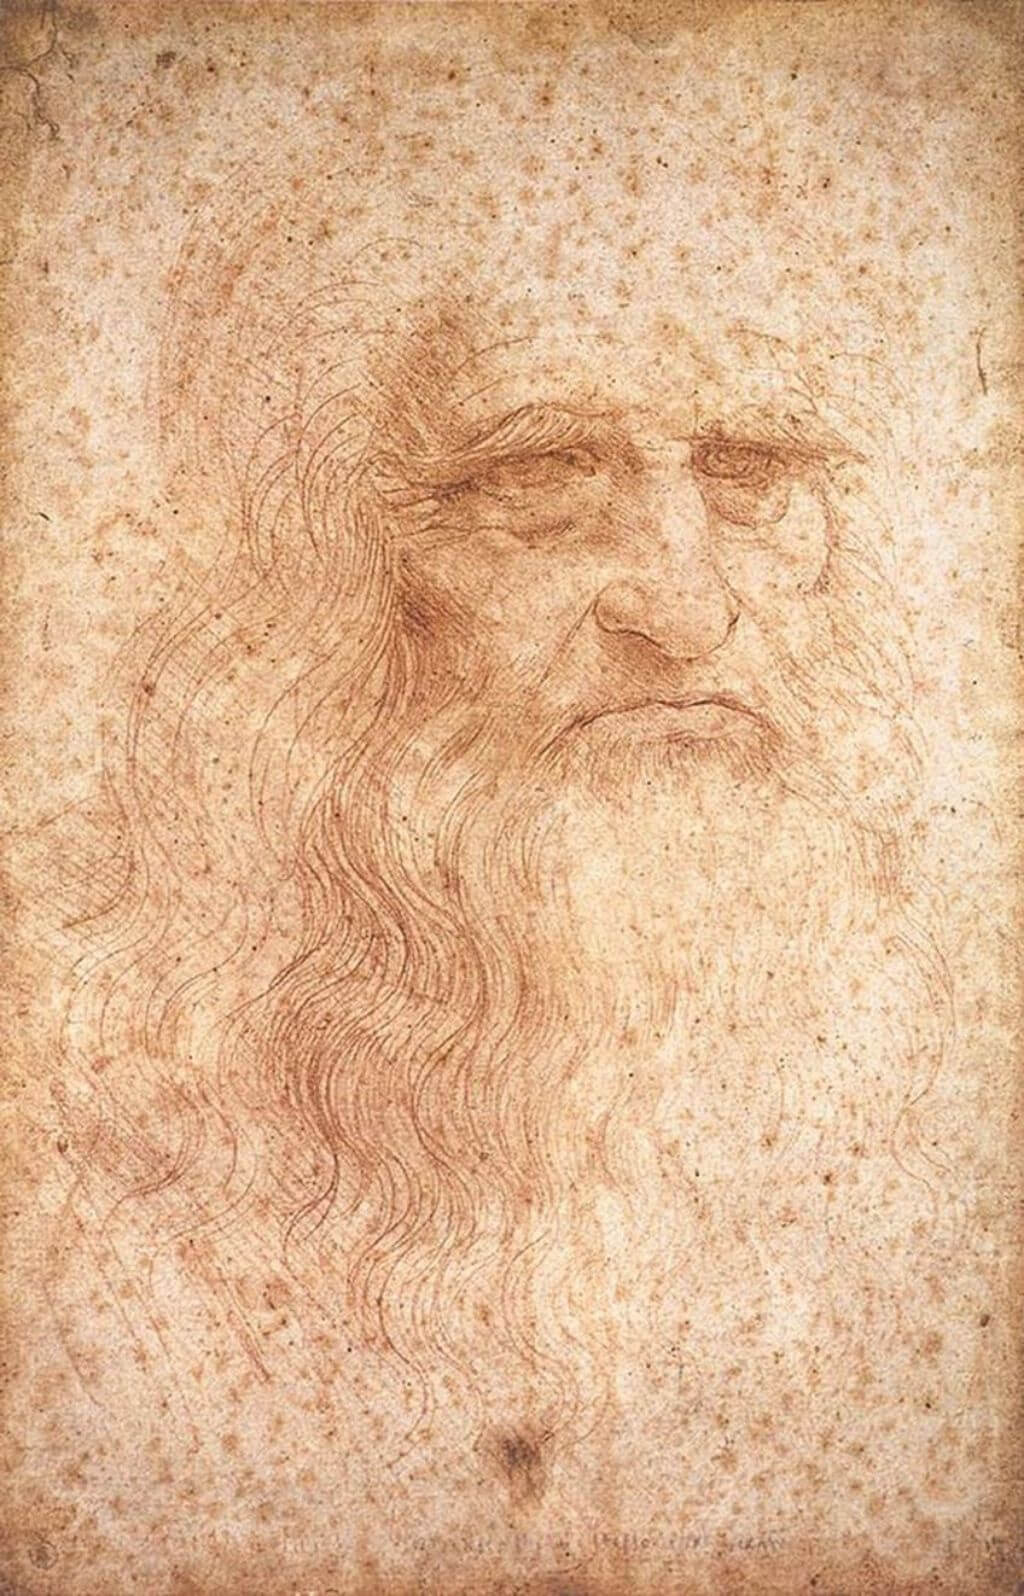 Kirmizi Tebesir Otoportresi Leonardo da Vinci 1452 1519